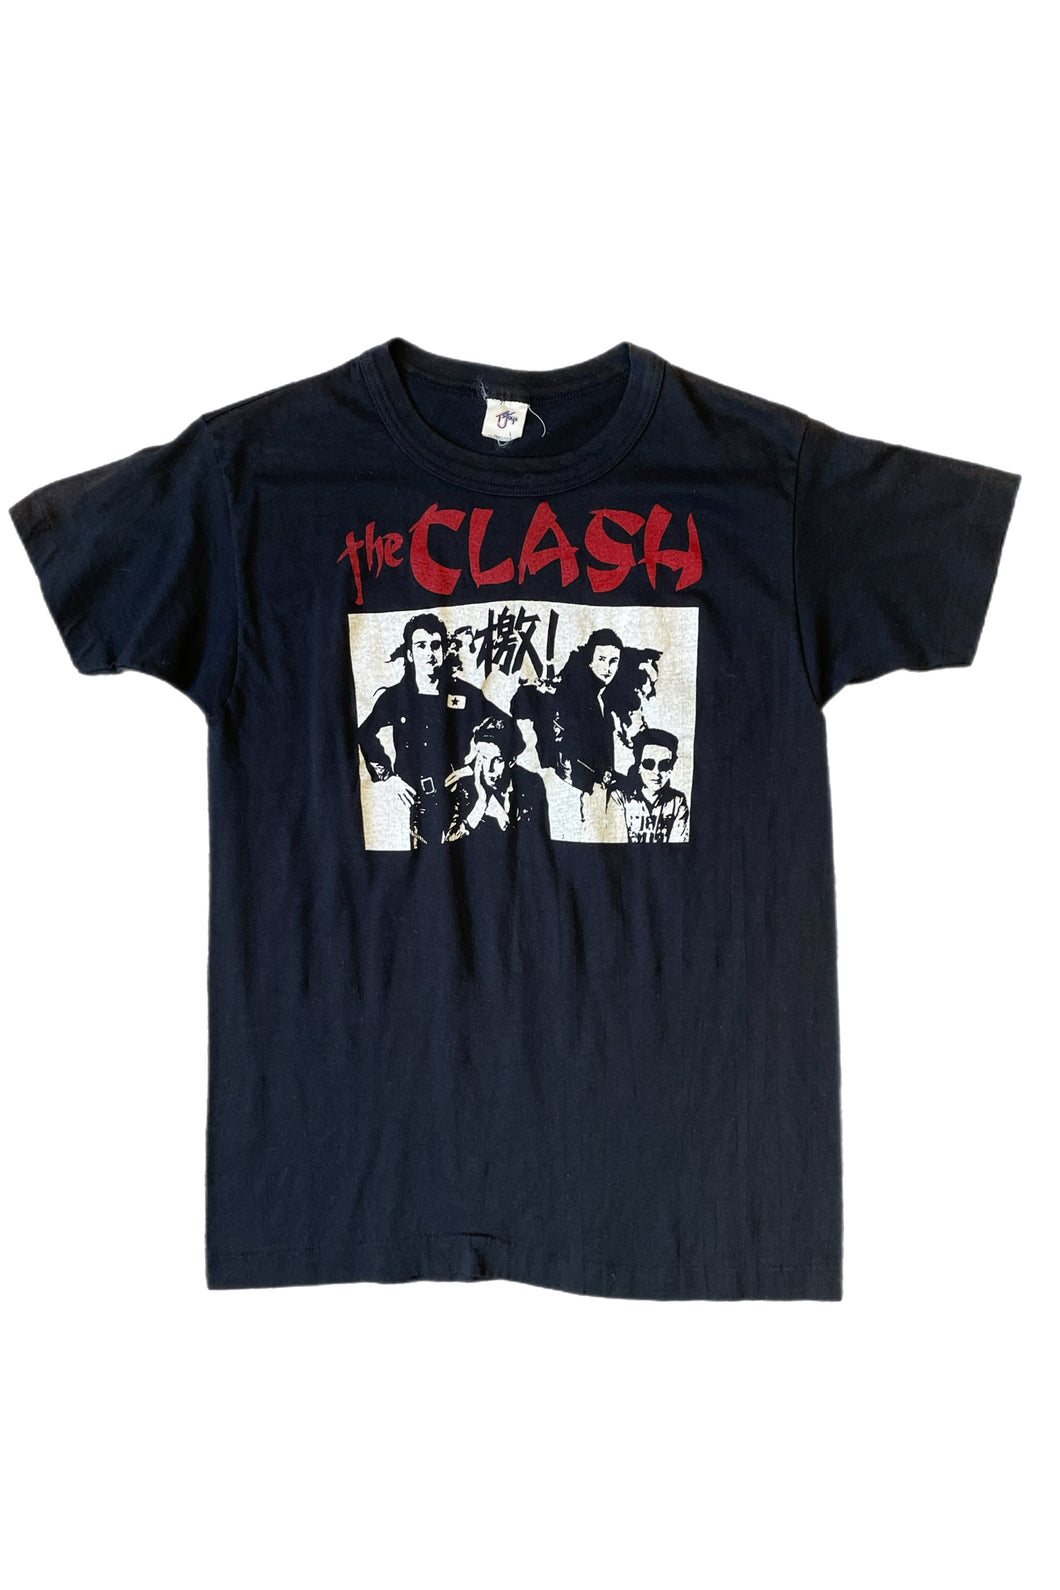 Vintage 1980's The Clash T-Shirt